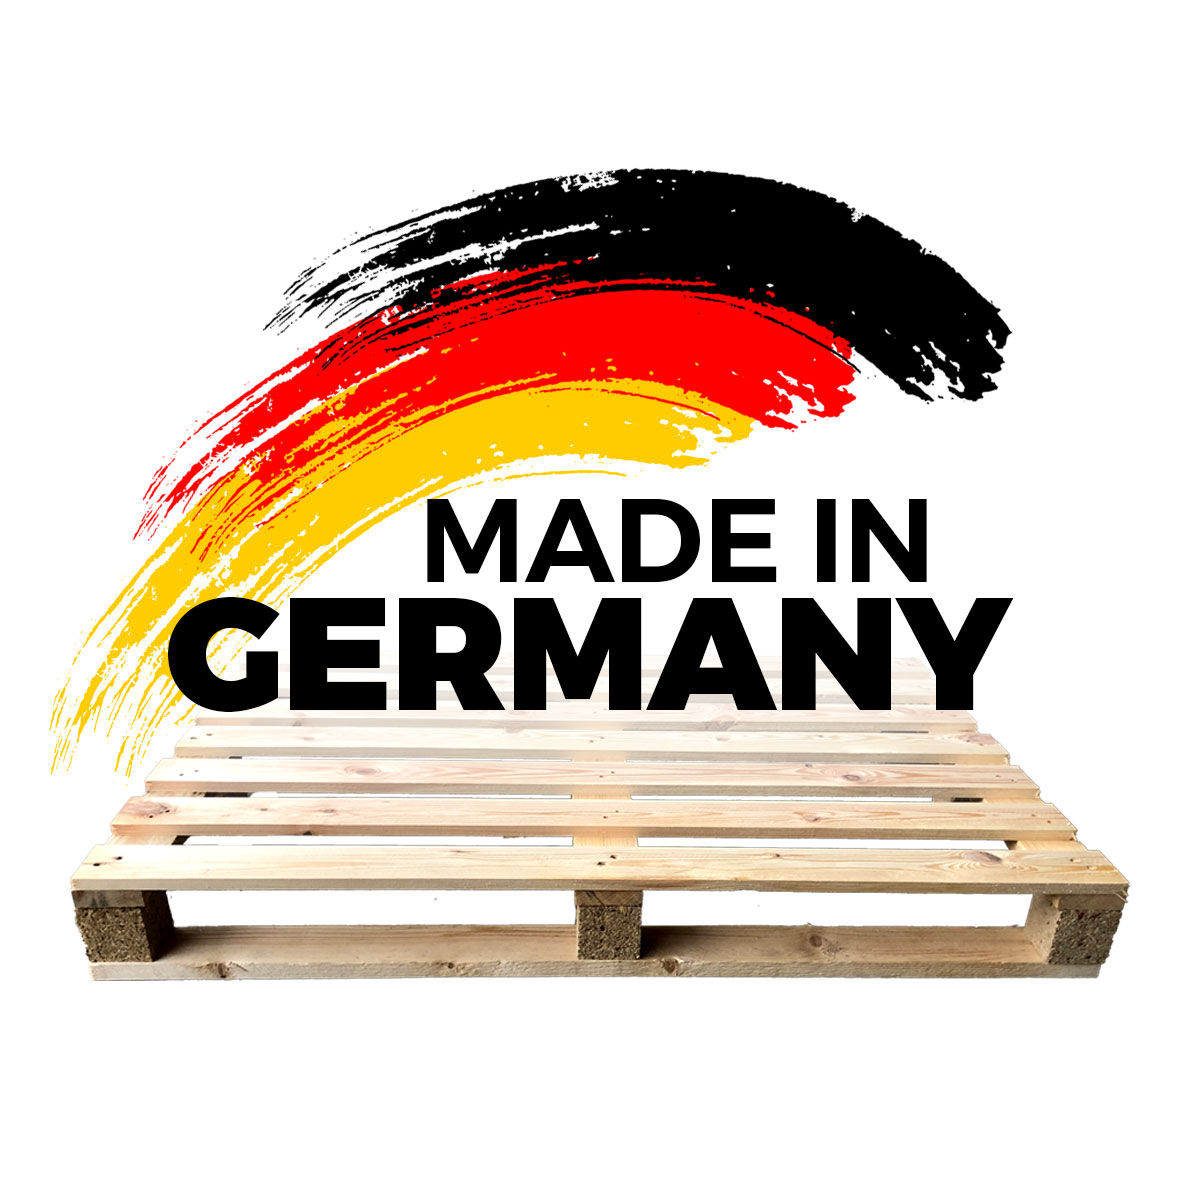 Stärkung der deutschen Wirtschaft durch den Einkauf bei nationalen Herstellern von Paletten und Packmitteln